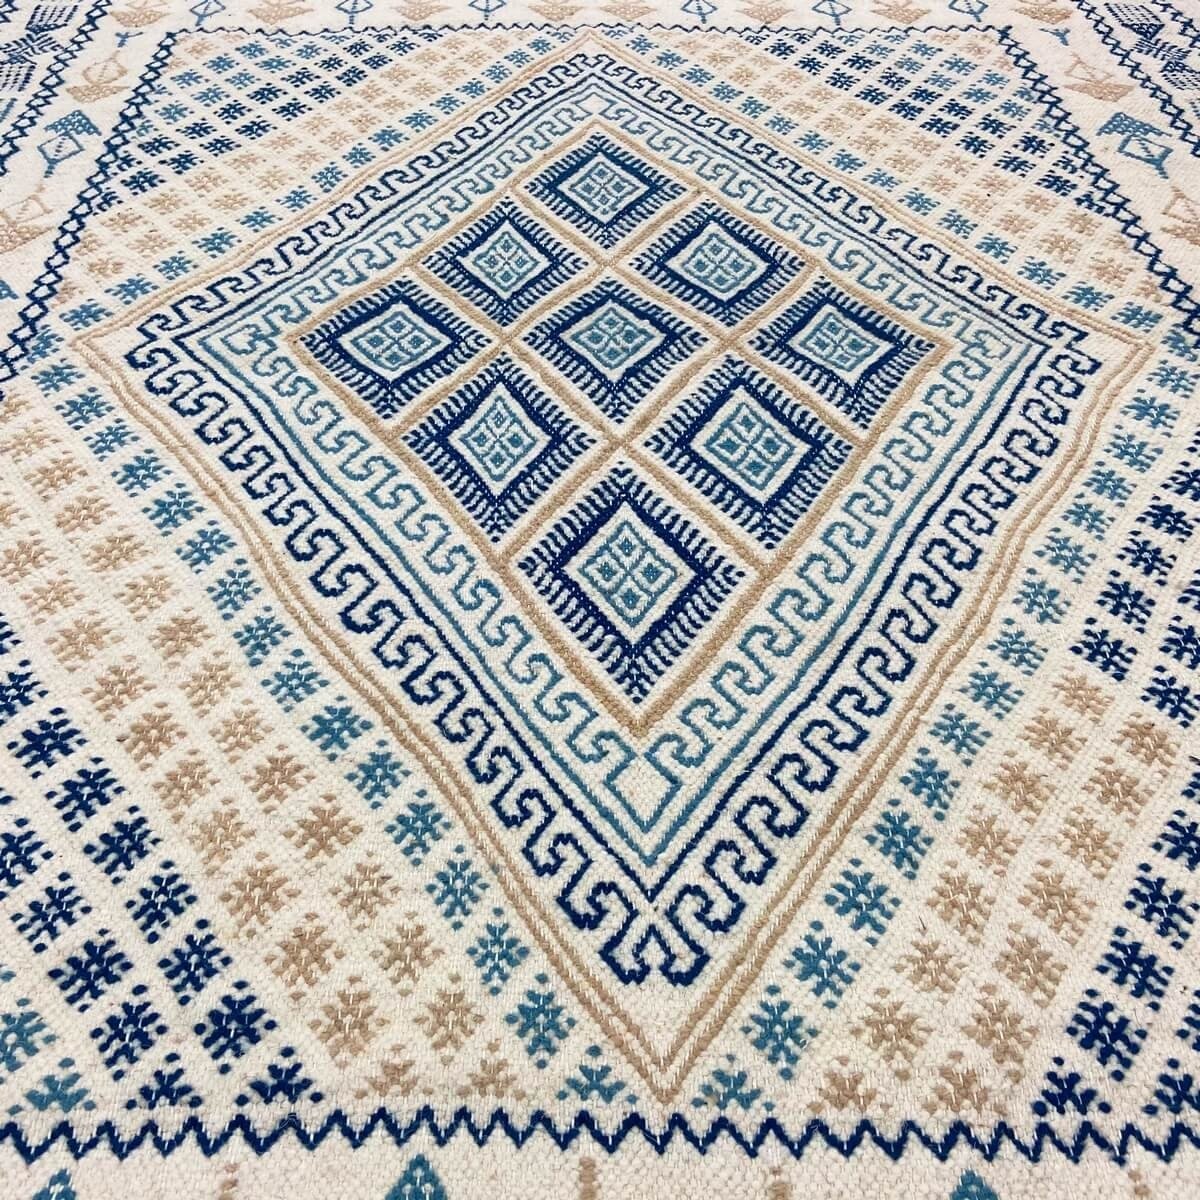 Berber tapijt Tapijt Margoum Mouja 129x196 cm Blauw/Wit (Handgeweven, Wol, Tunesië) Tunesisch Margoum Tapijt uit de stad Kairoua